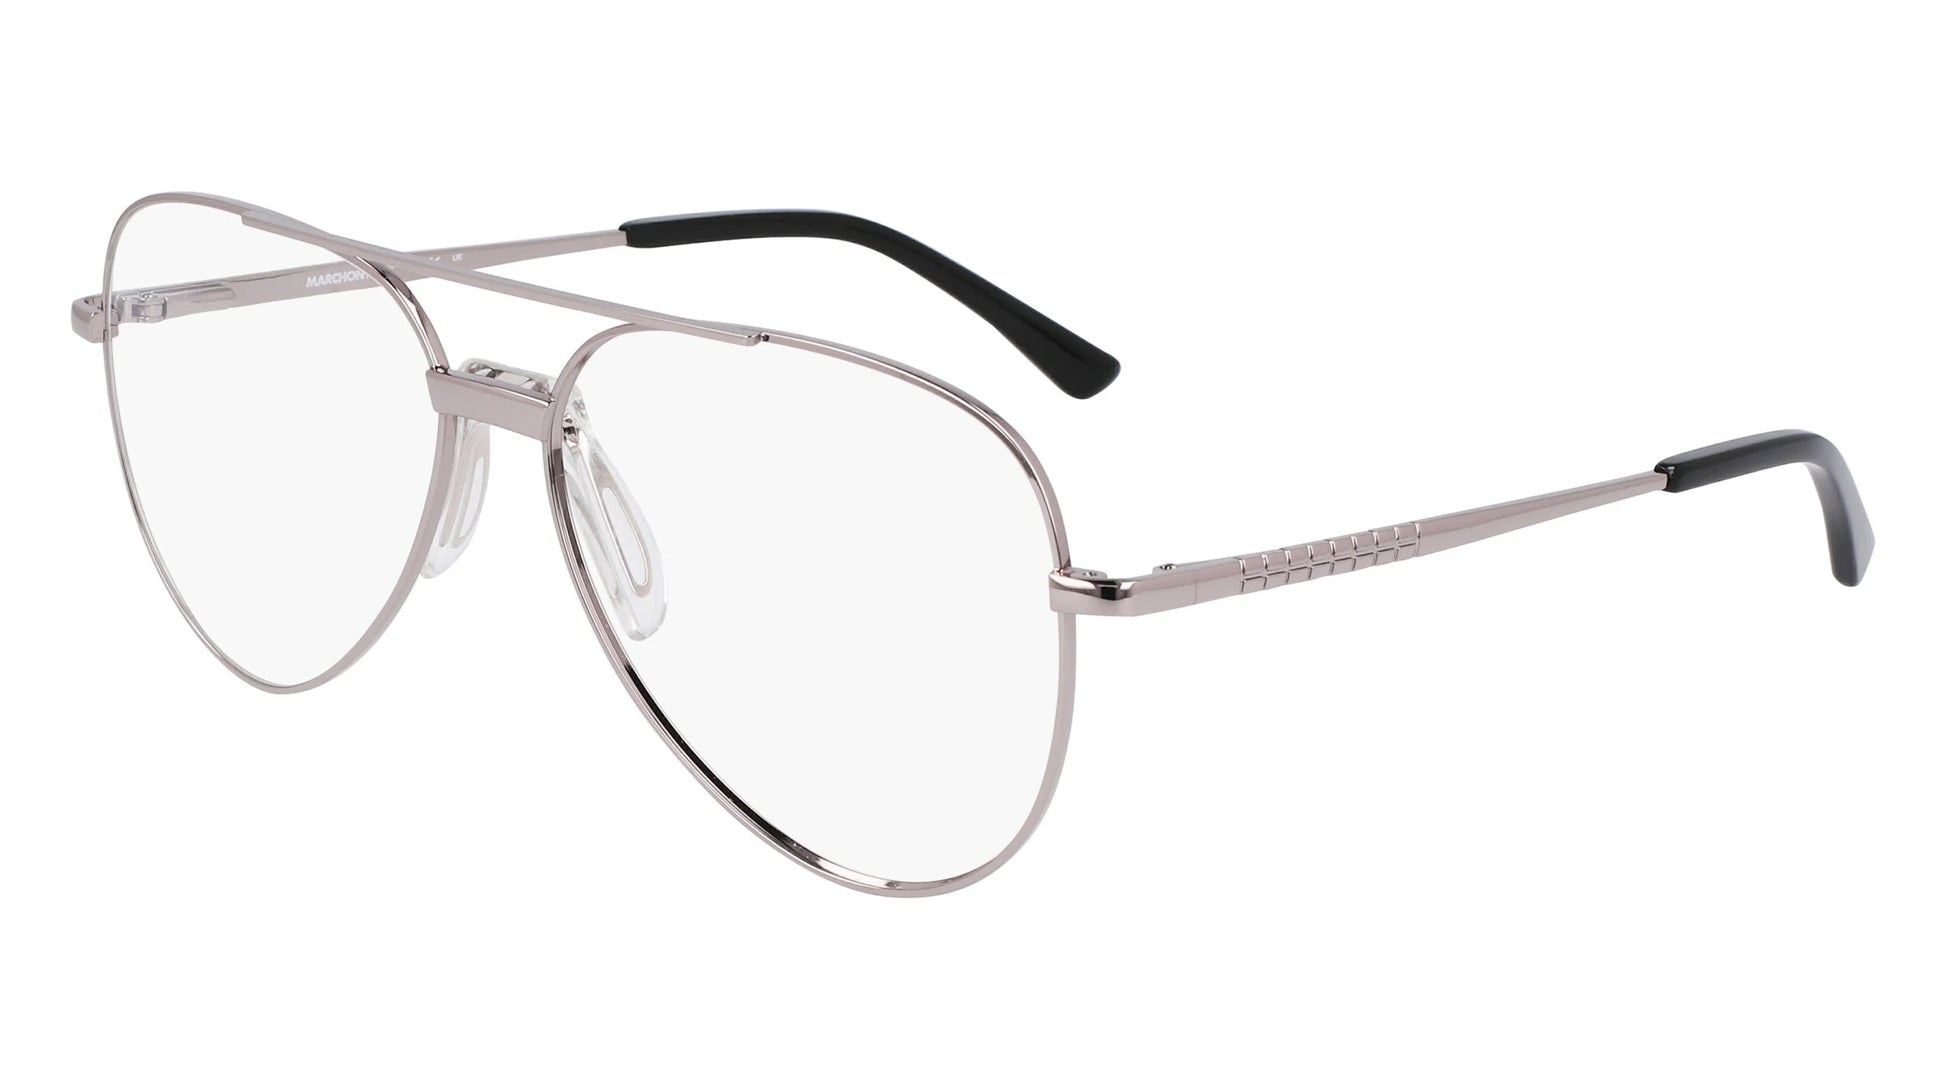 Marchon NYC M-9008 Eyeglasses Shiny Gunmetal